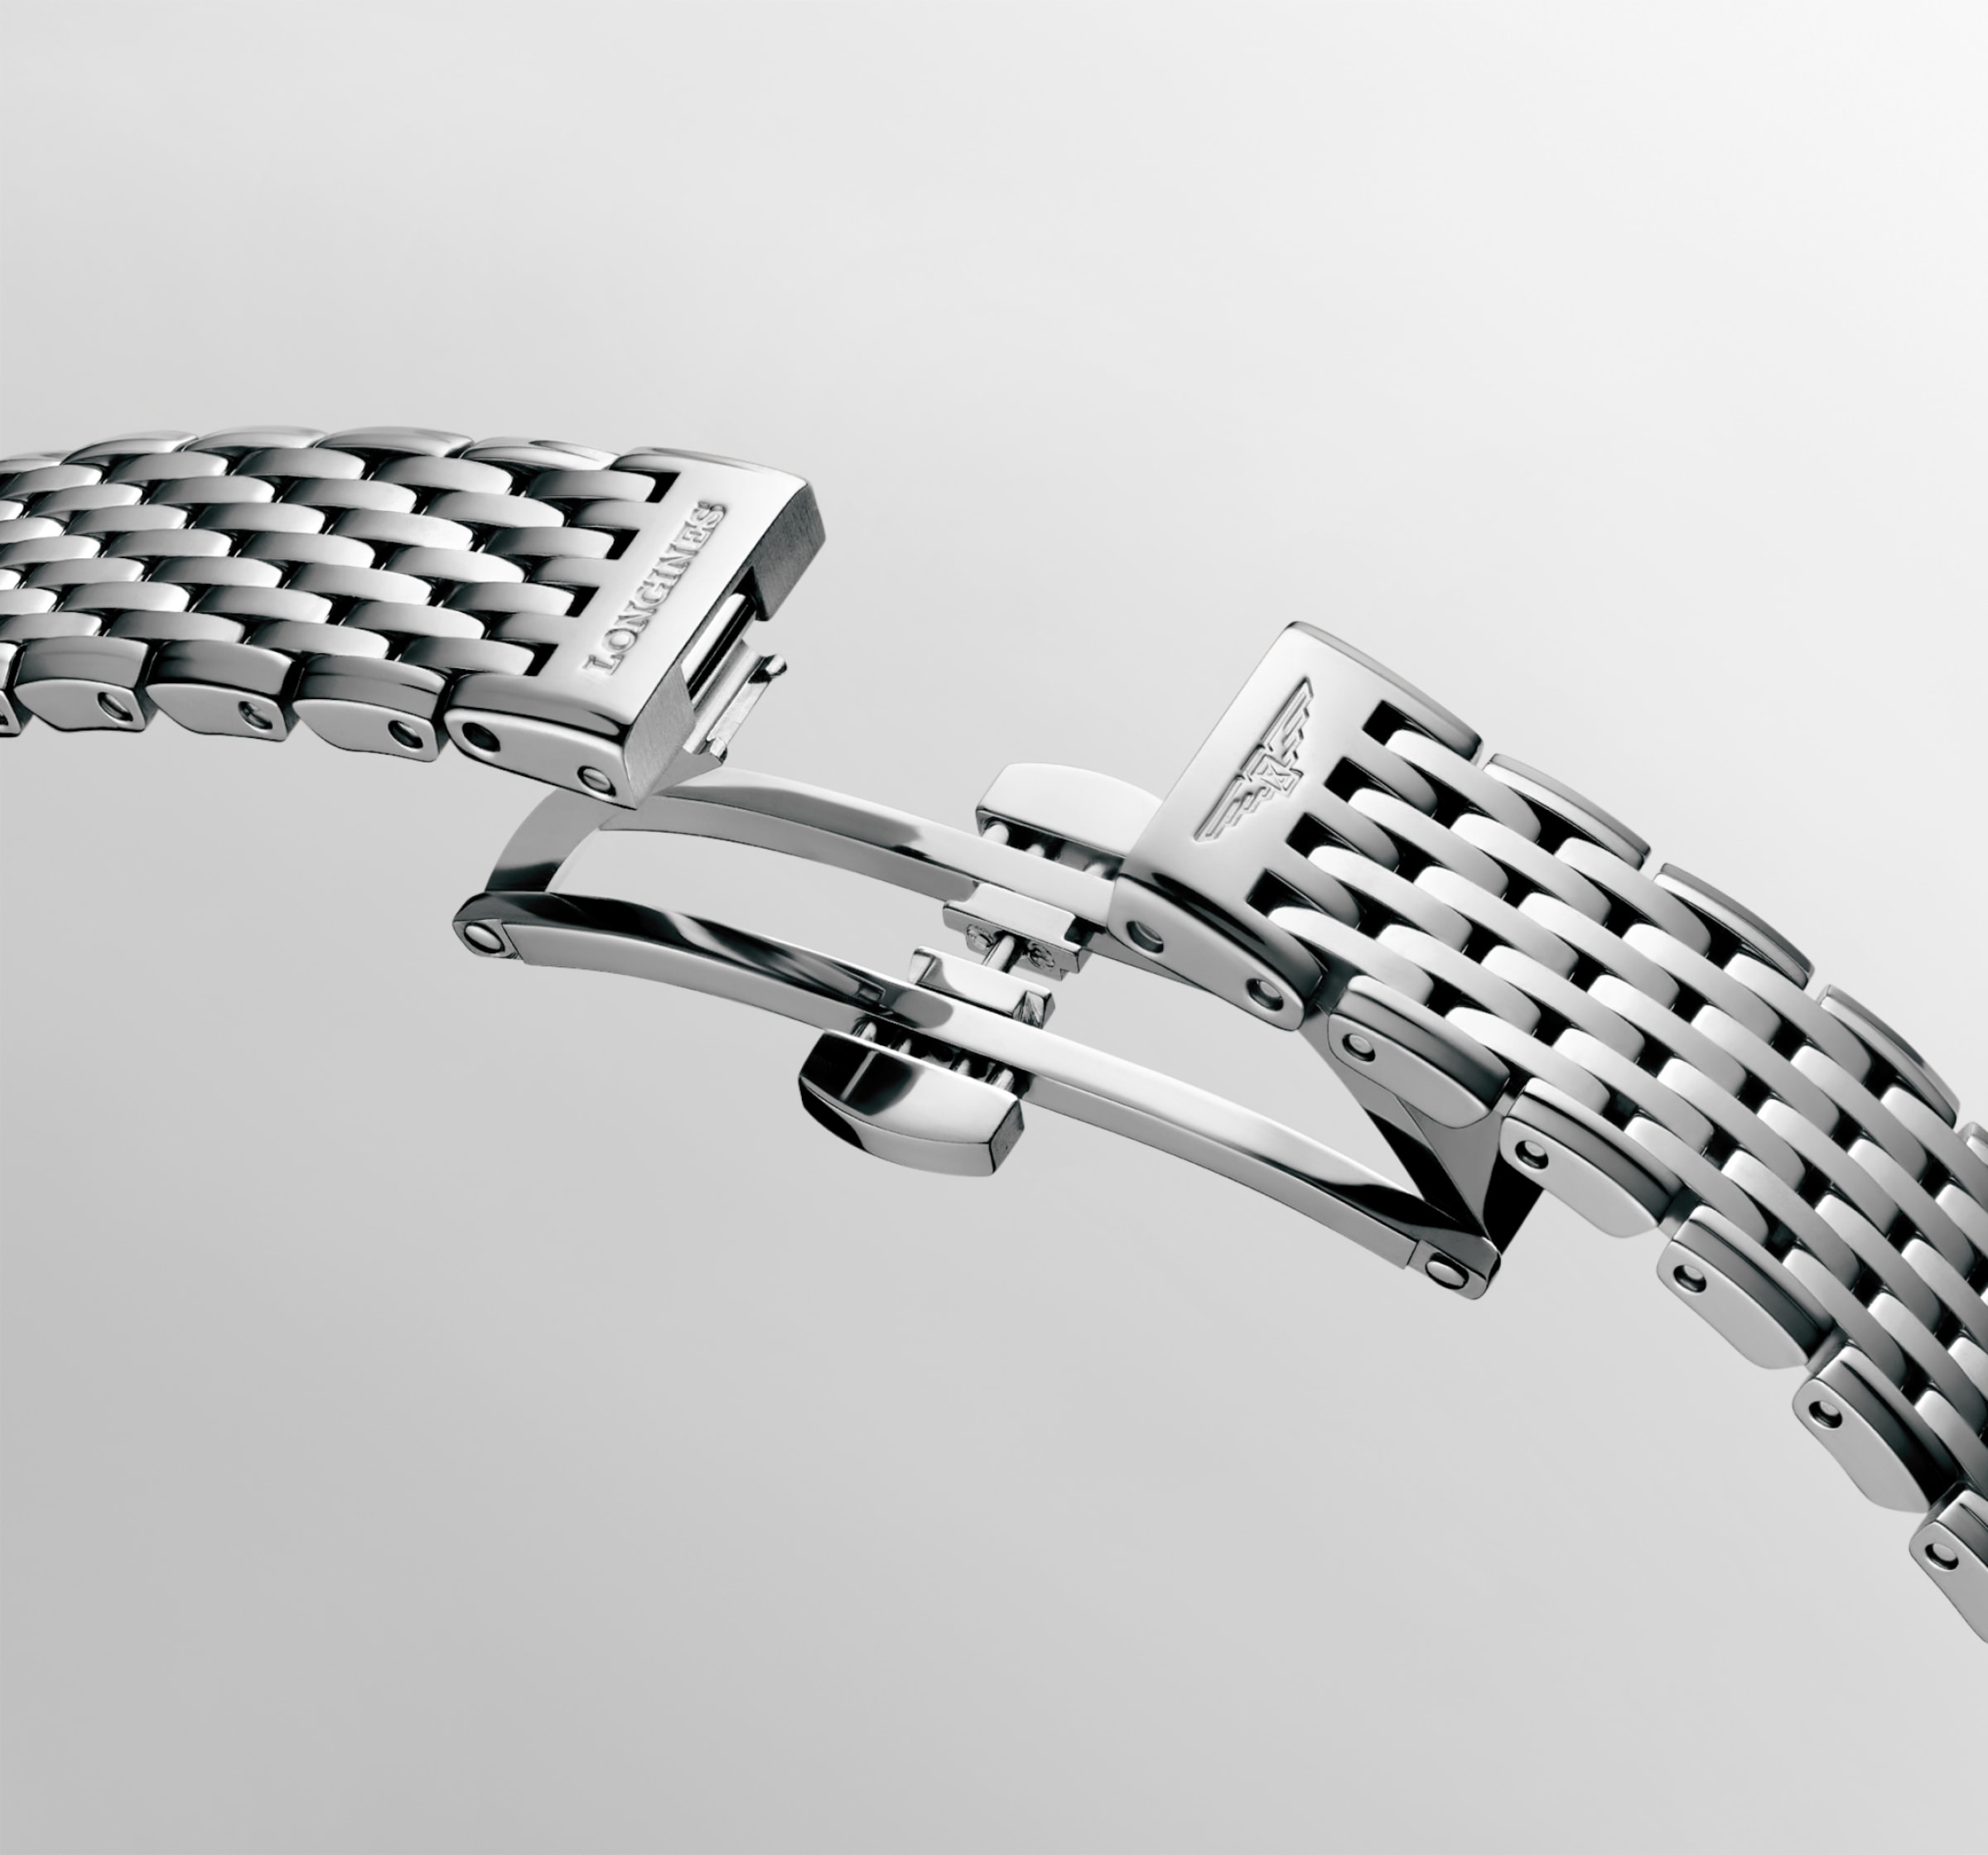 Longines LA GRANDE CLASSIQUE DE LONGINES Quartz Stainless steel Watch - L4.209.4.70.6